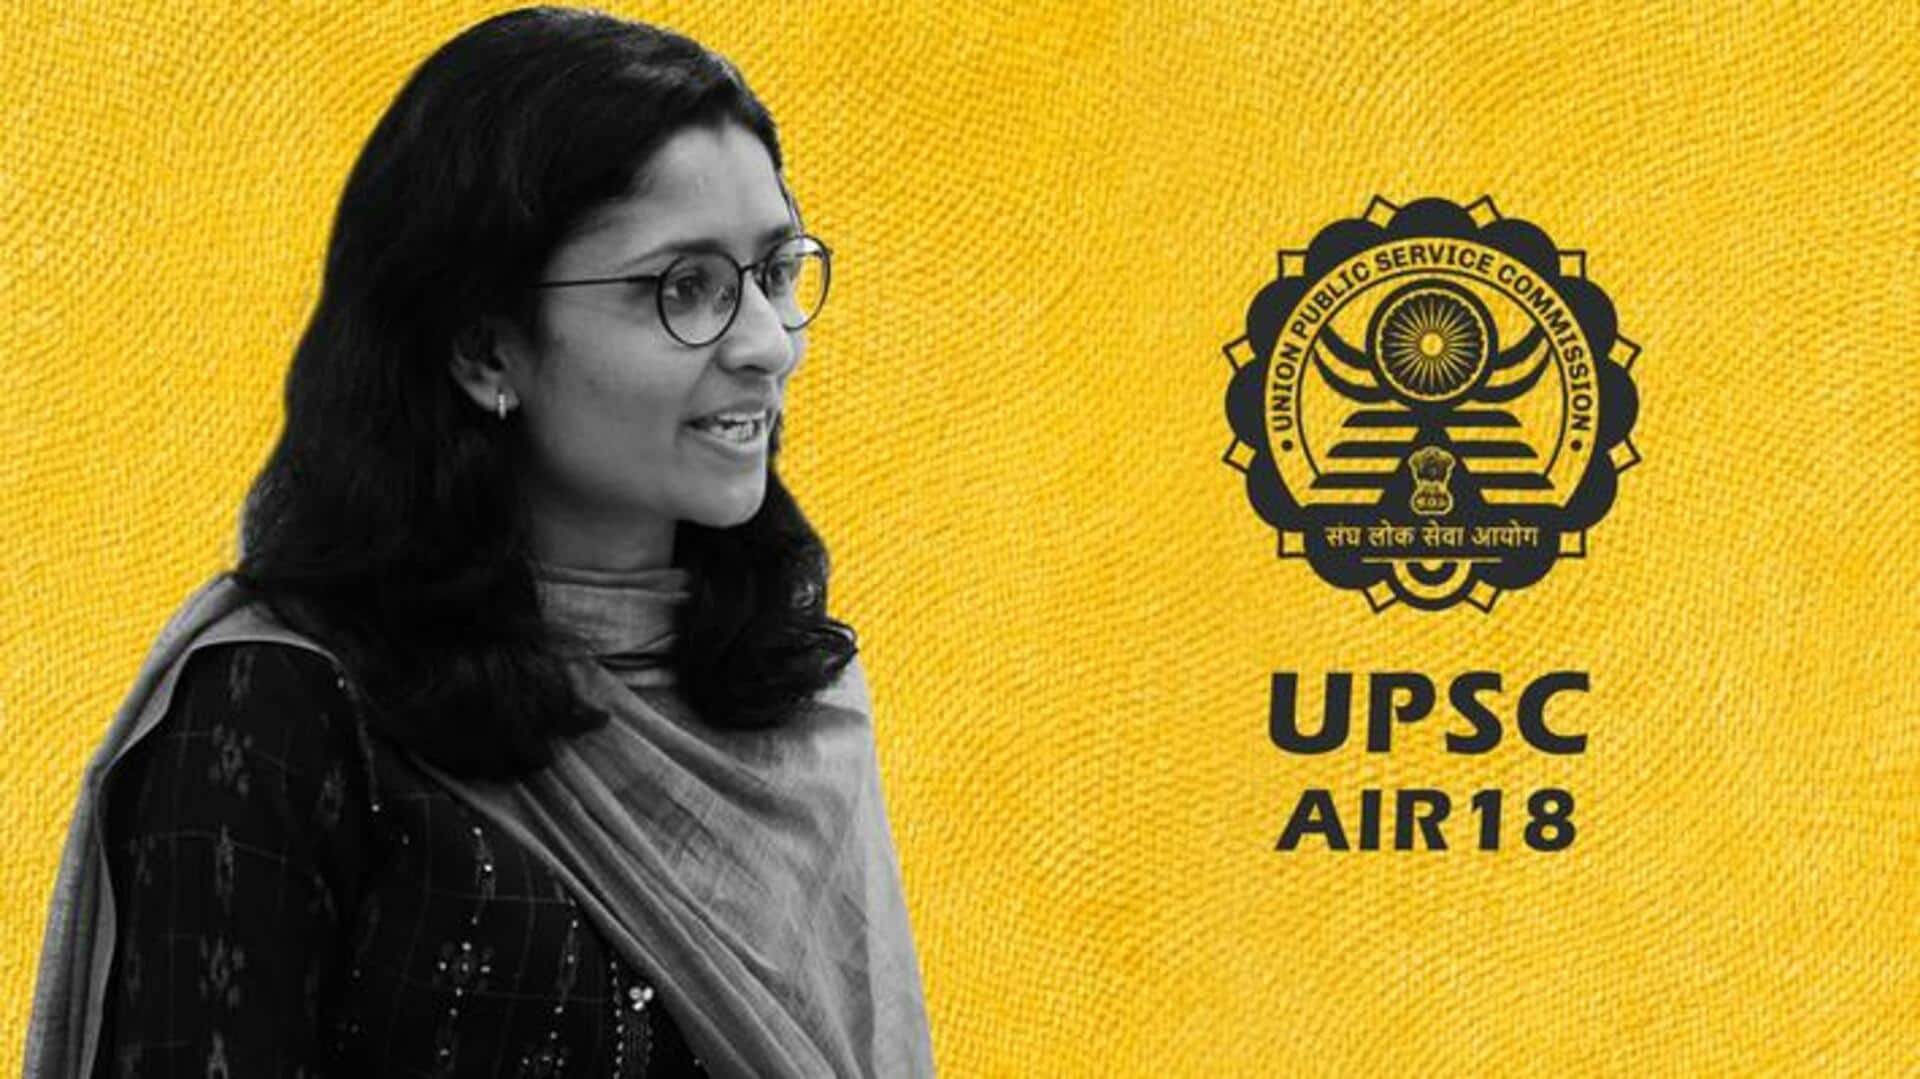 राधिका गुप्ता: UPSC की तैयारी के लिए नौकरी छोड़ी, सेल्फ स्टडी से हासिल की 18वीं रैंक